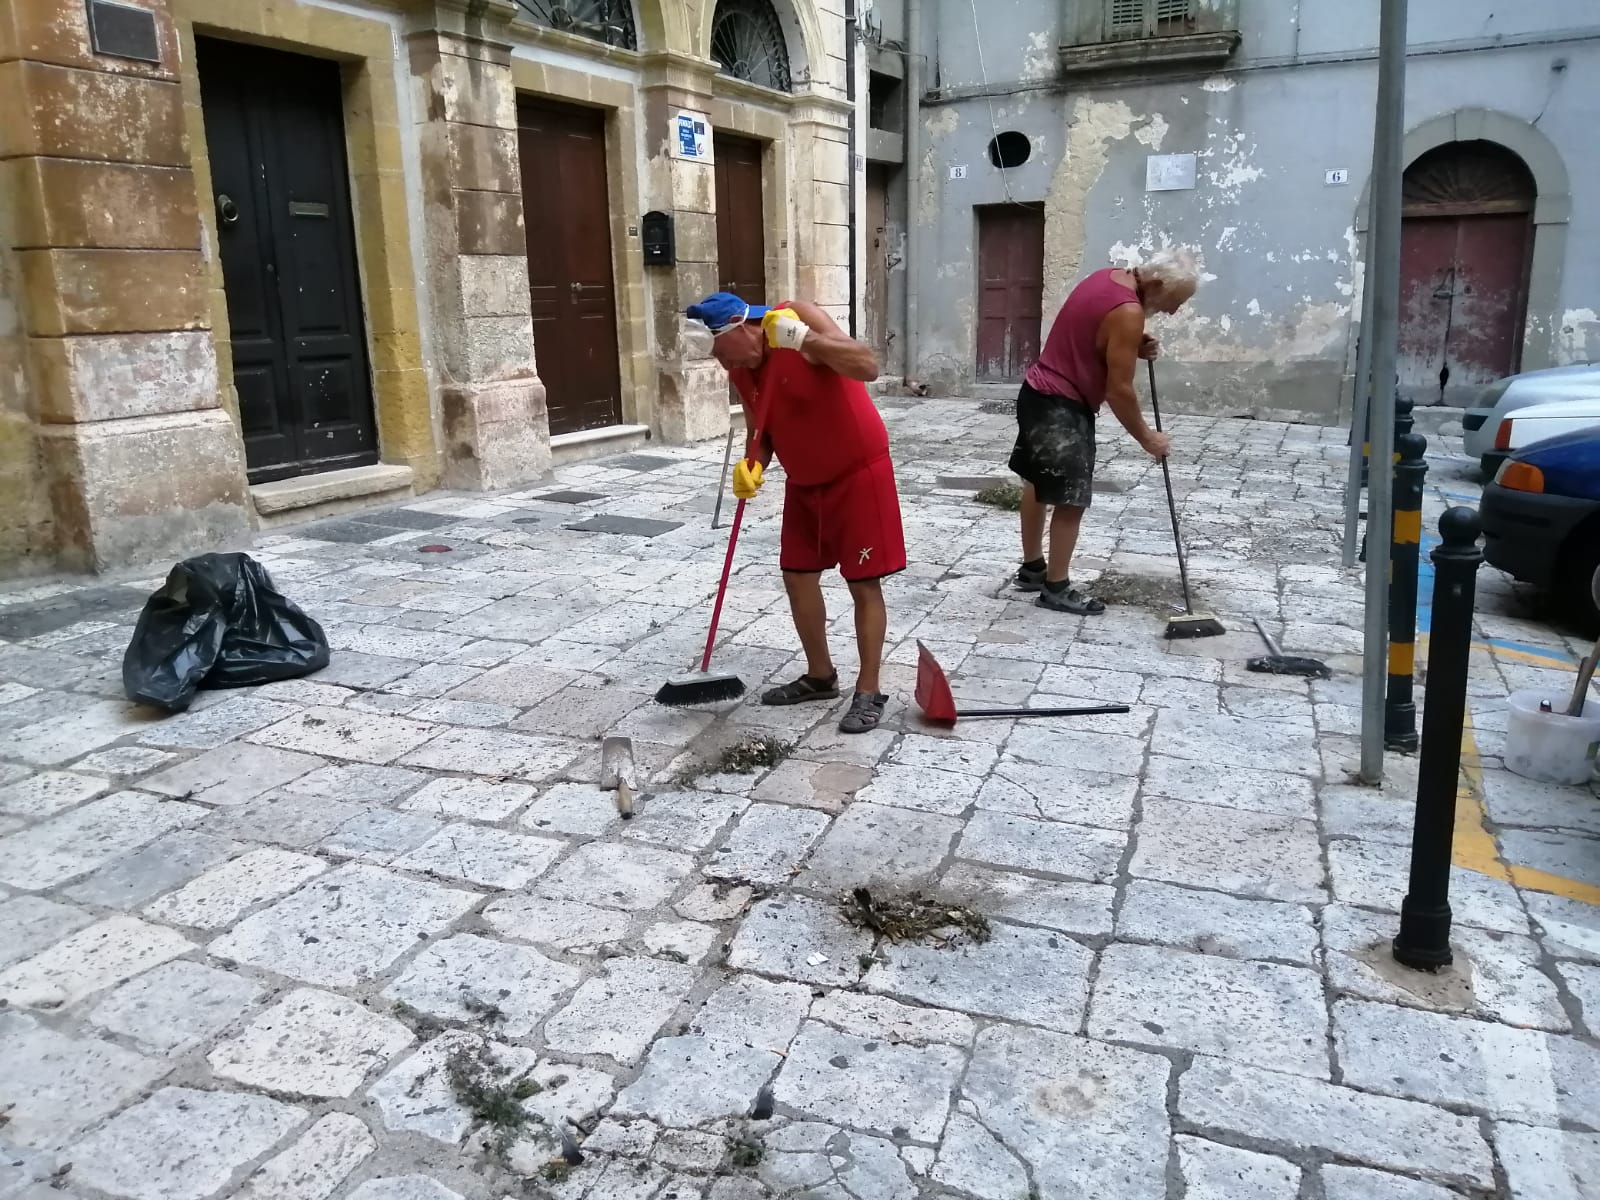 Nonno Vito & friend ripuliscono la città. C’è posto da Ecotecnica?